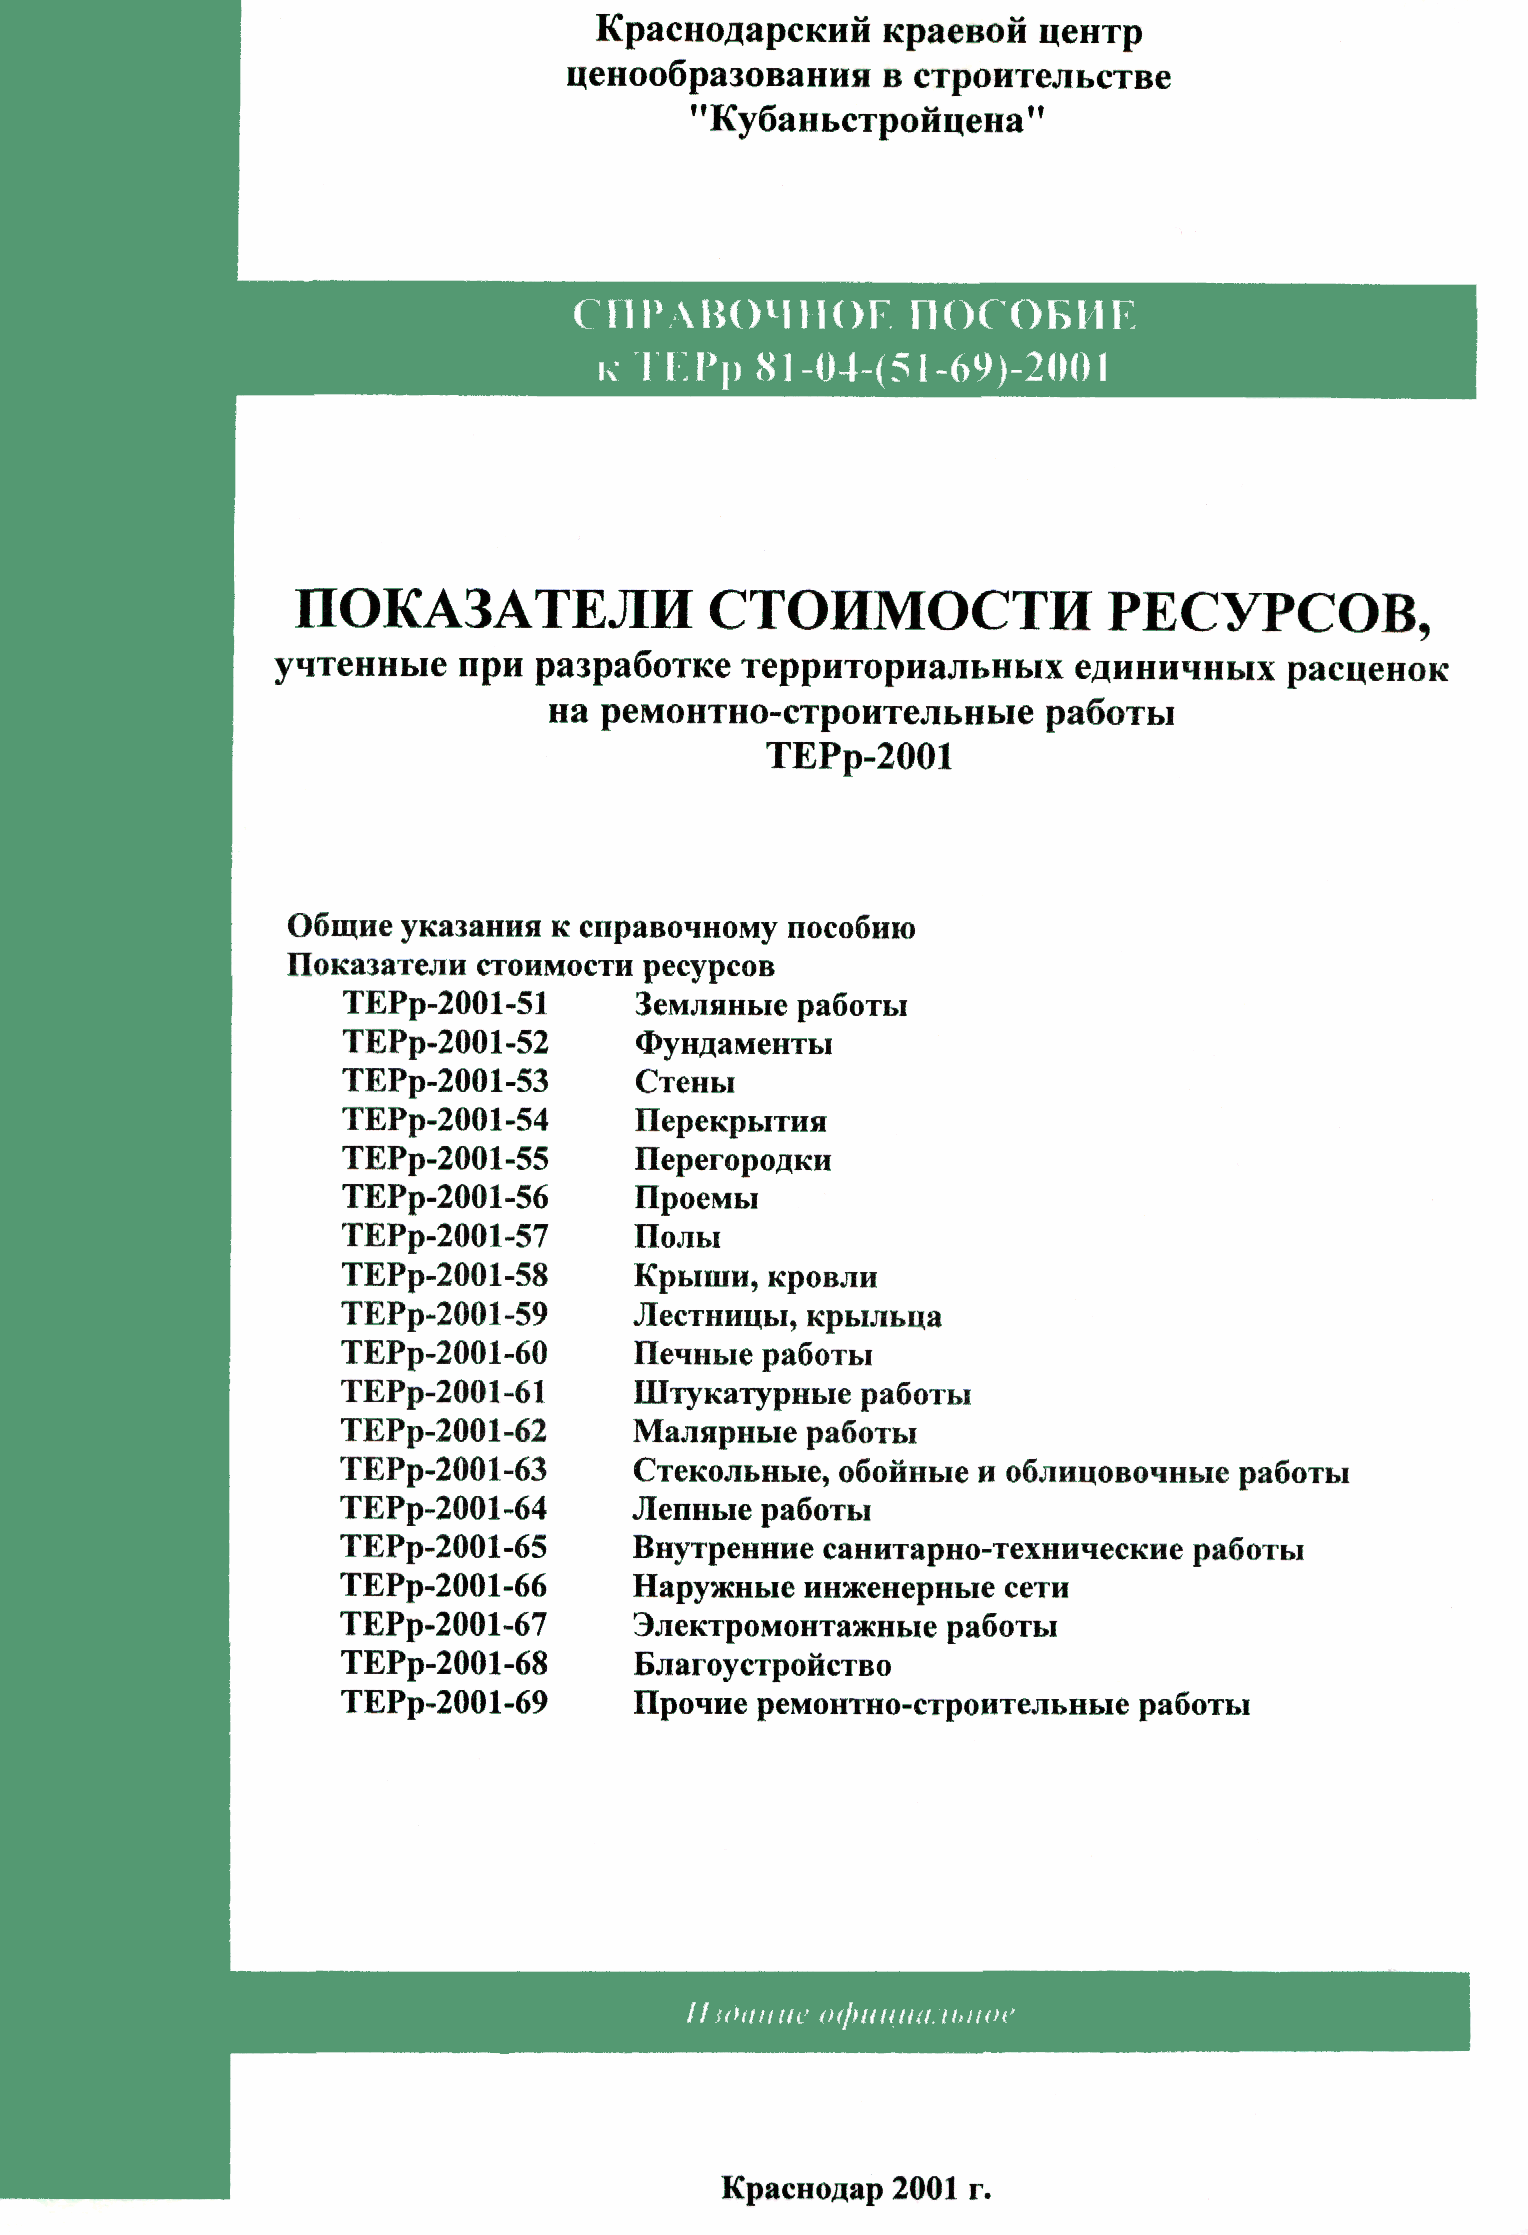 Справочное пособие к ТЕРр 81-04-62-2001